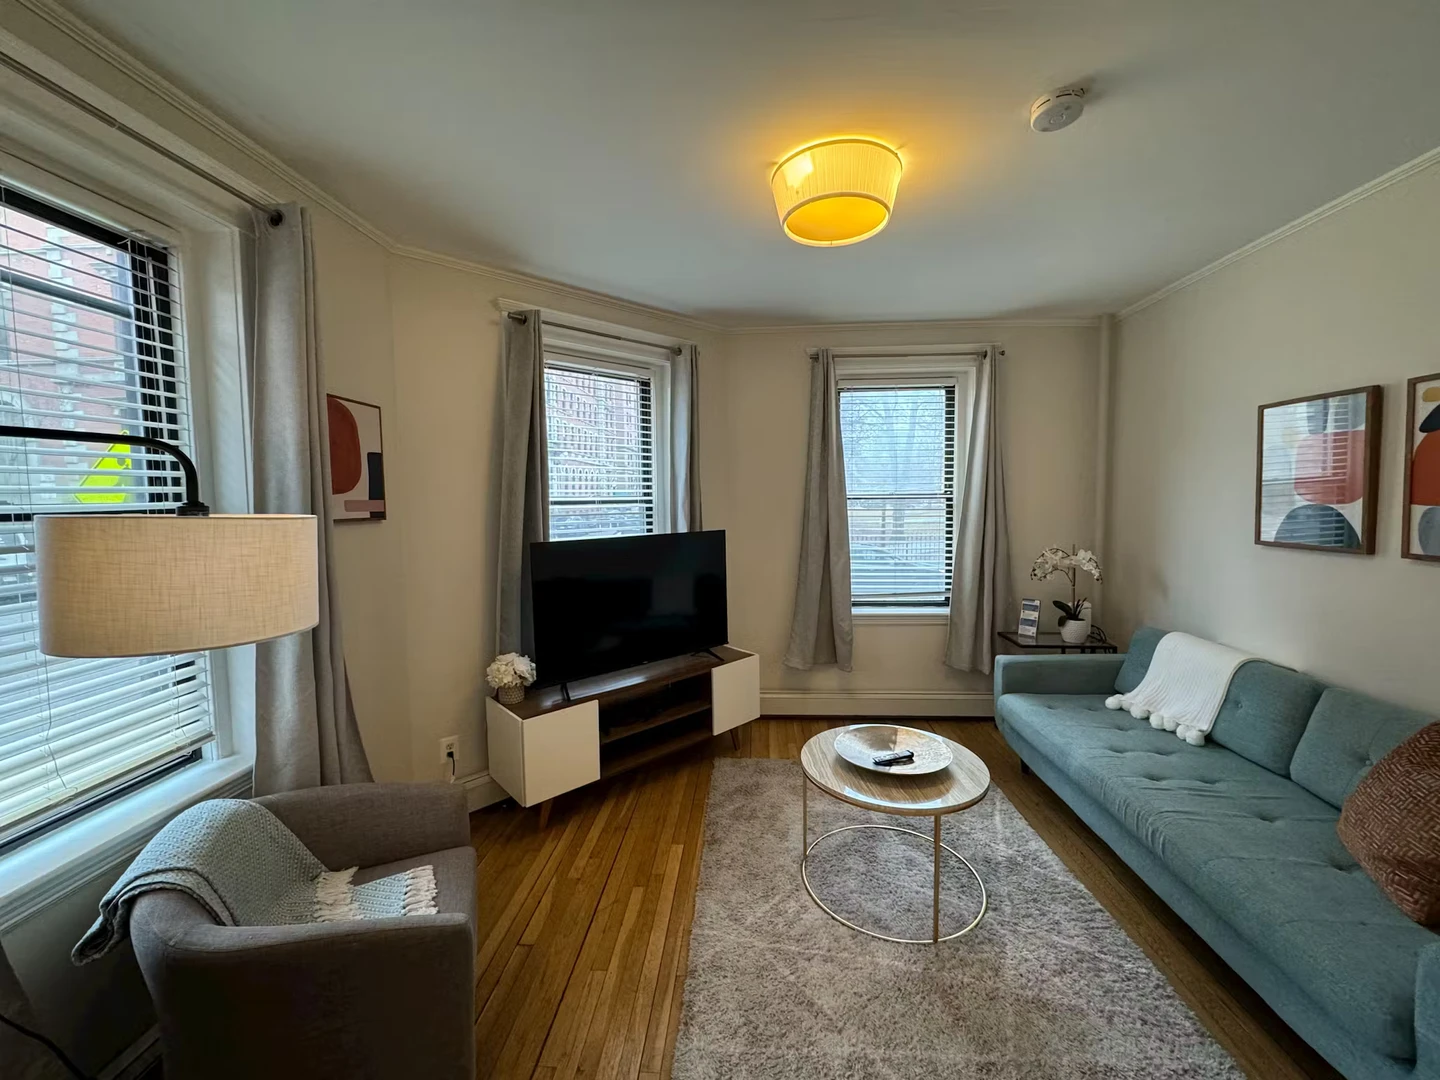 Apartamento moderno y luminoso en boston